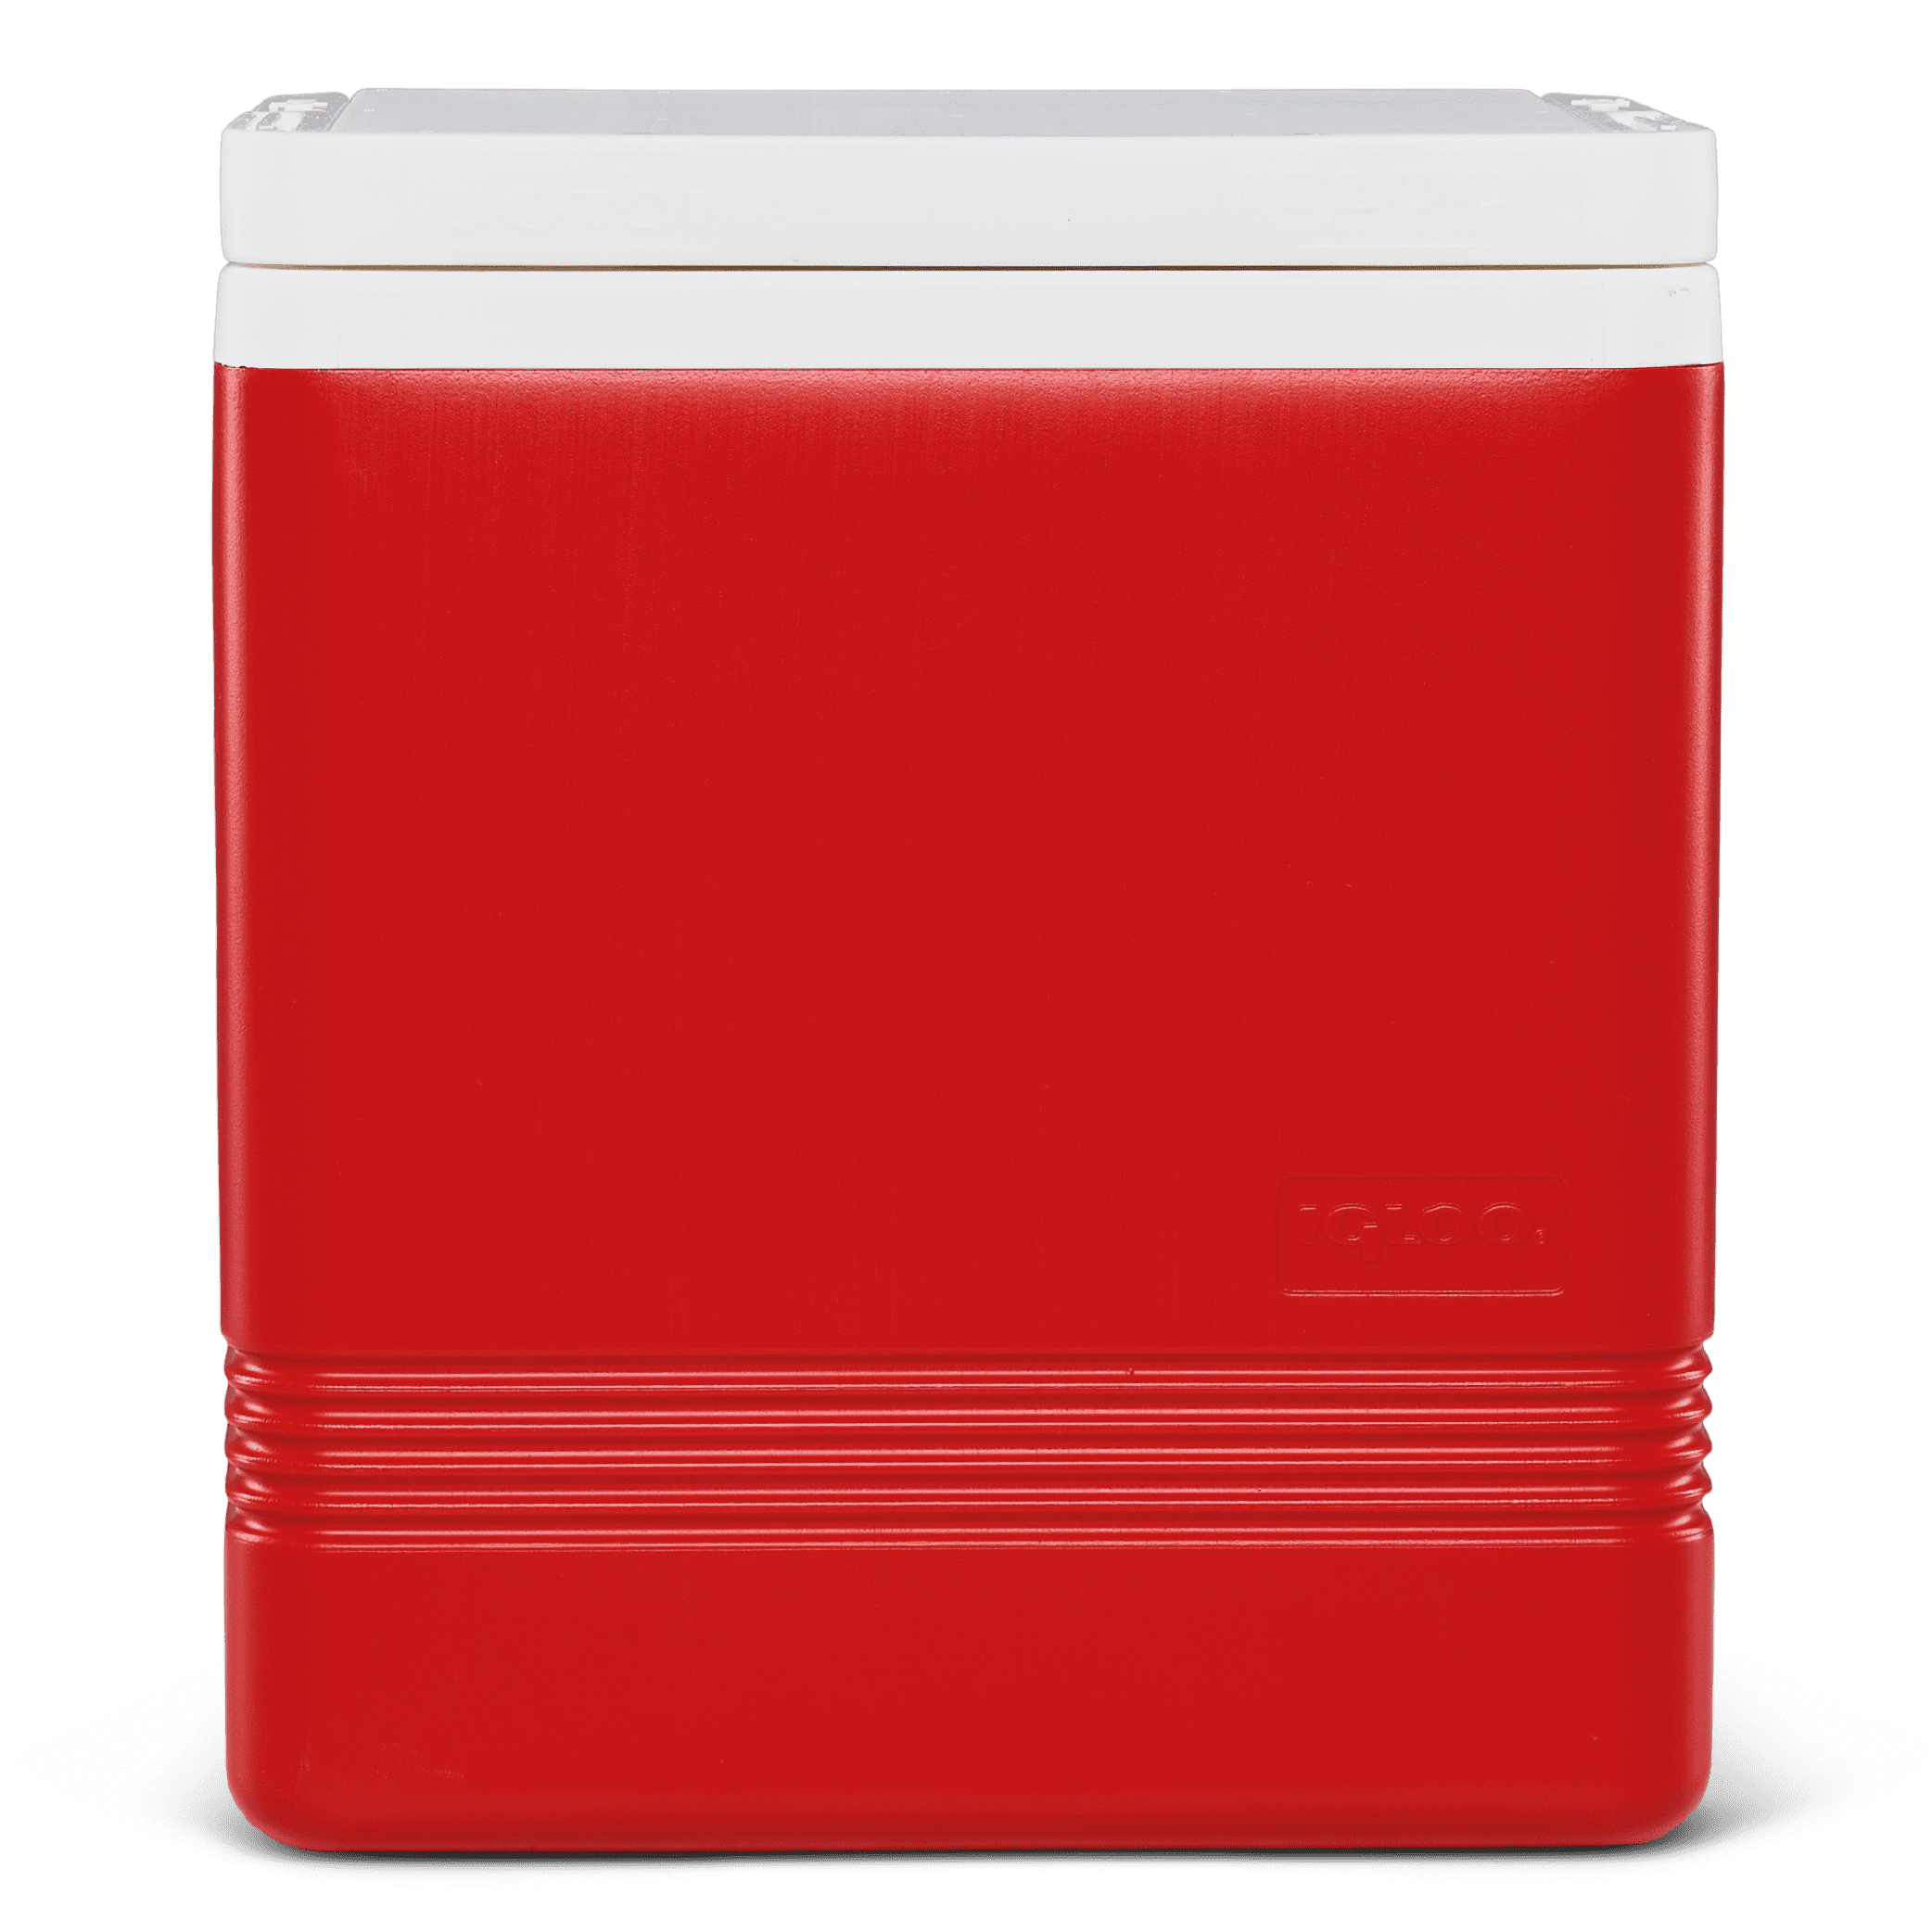 Nevera portátil rigida 6 litros color rojo